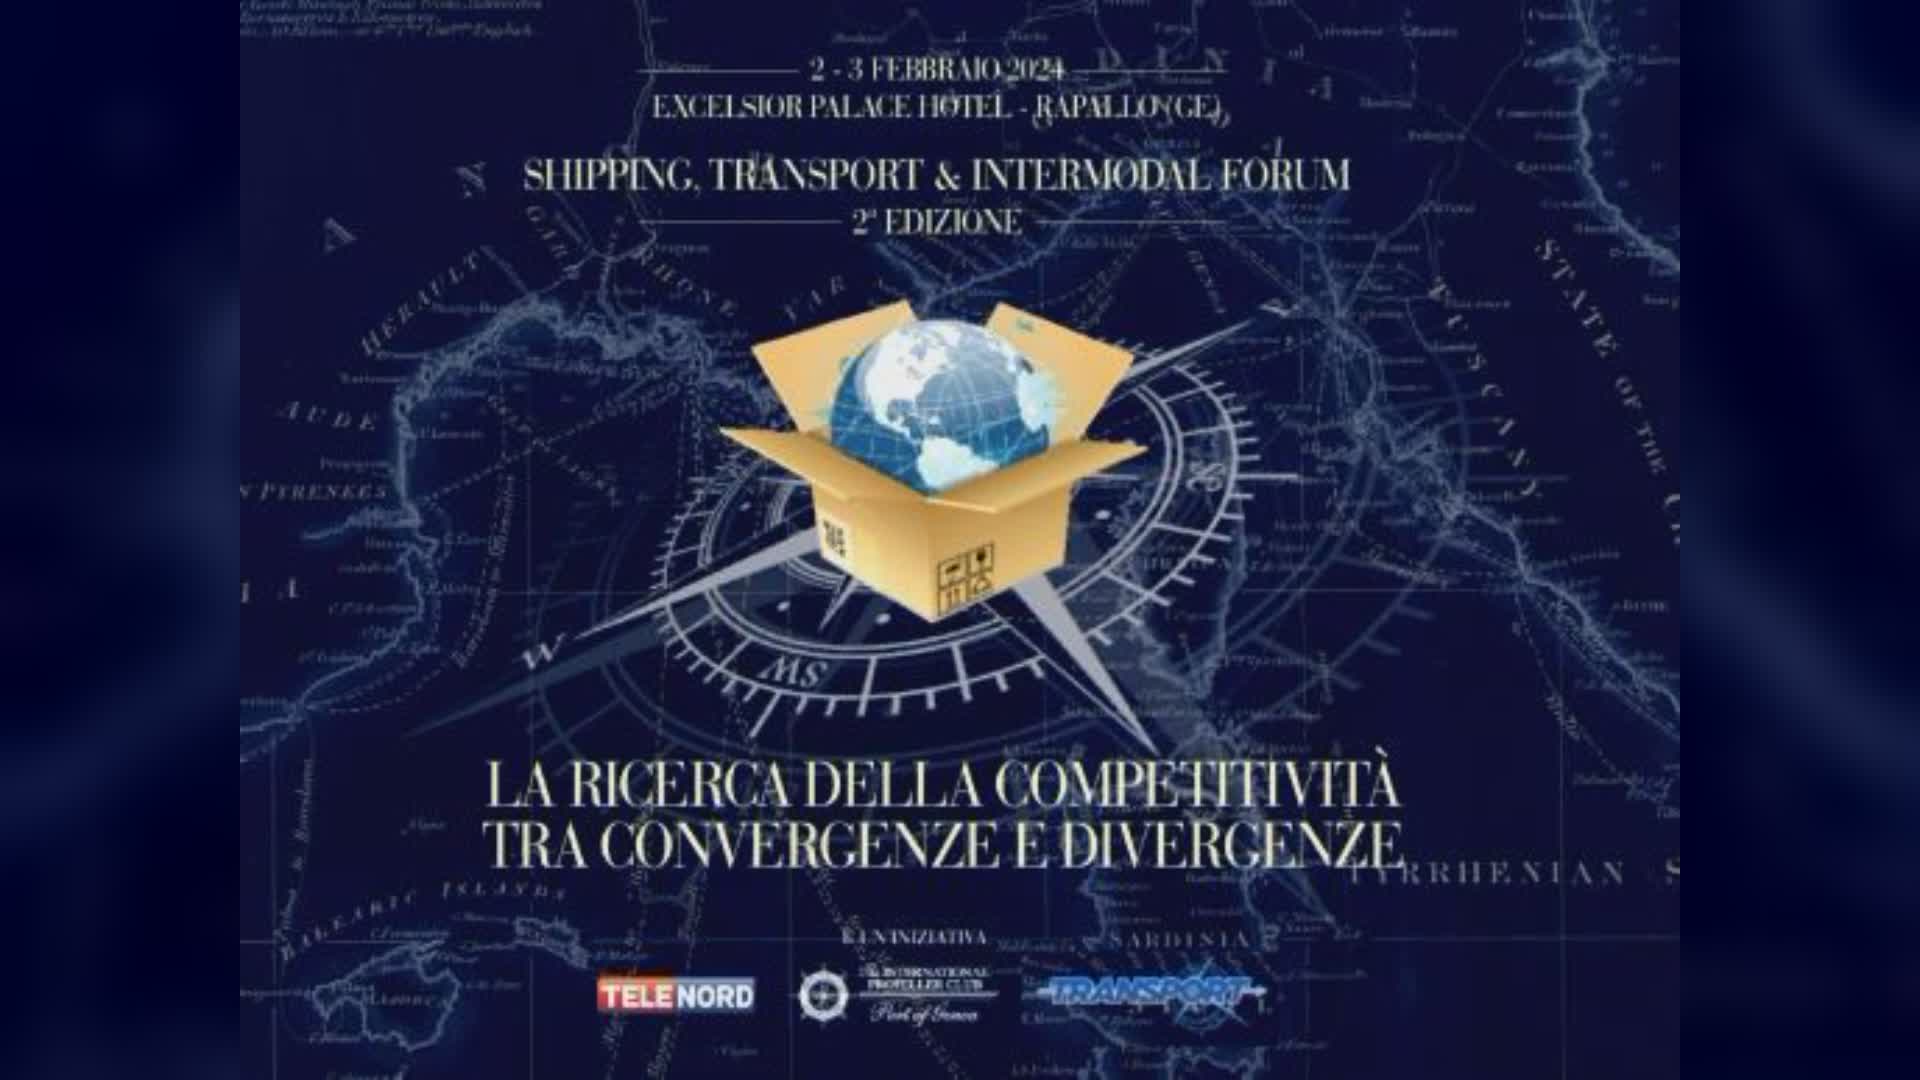 Shipping, Transport & Intermodal Forum, 2° edizione: la crisi del Mar Rosso al centro del convegno